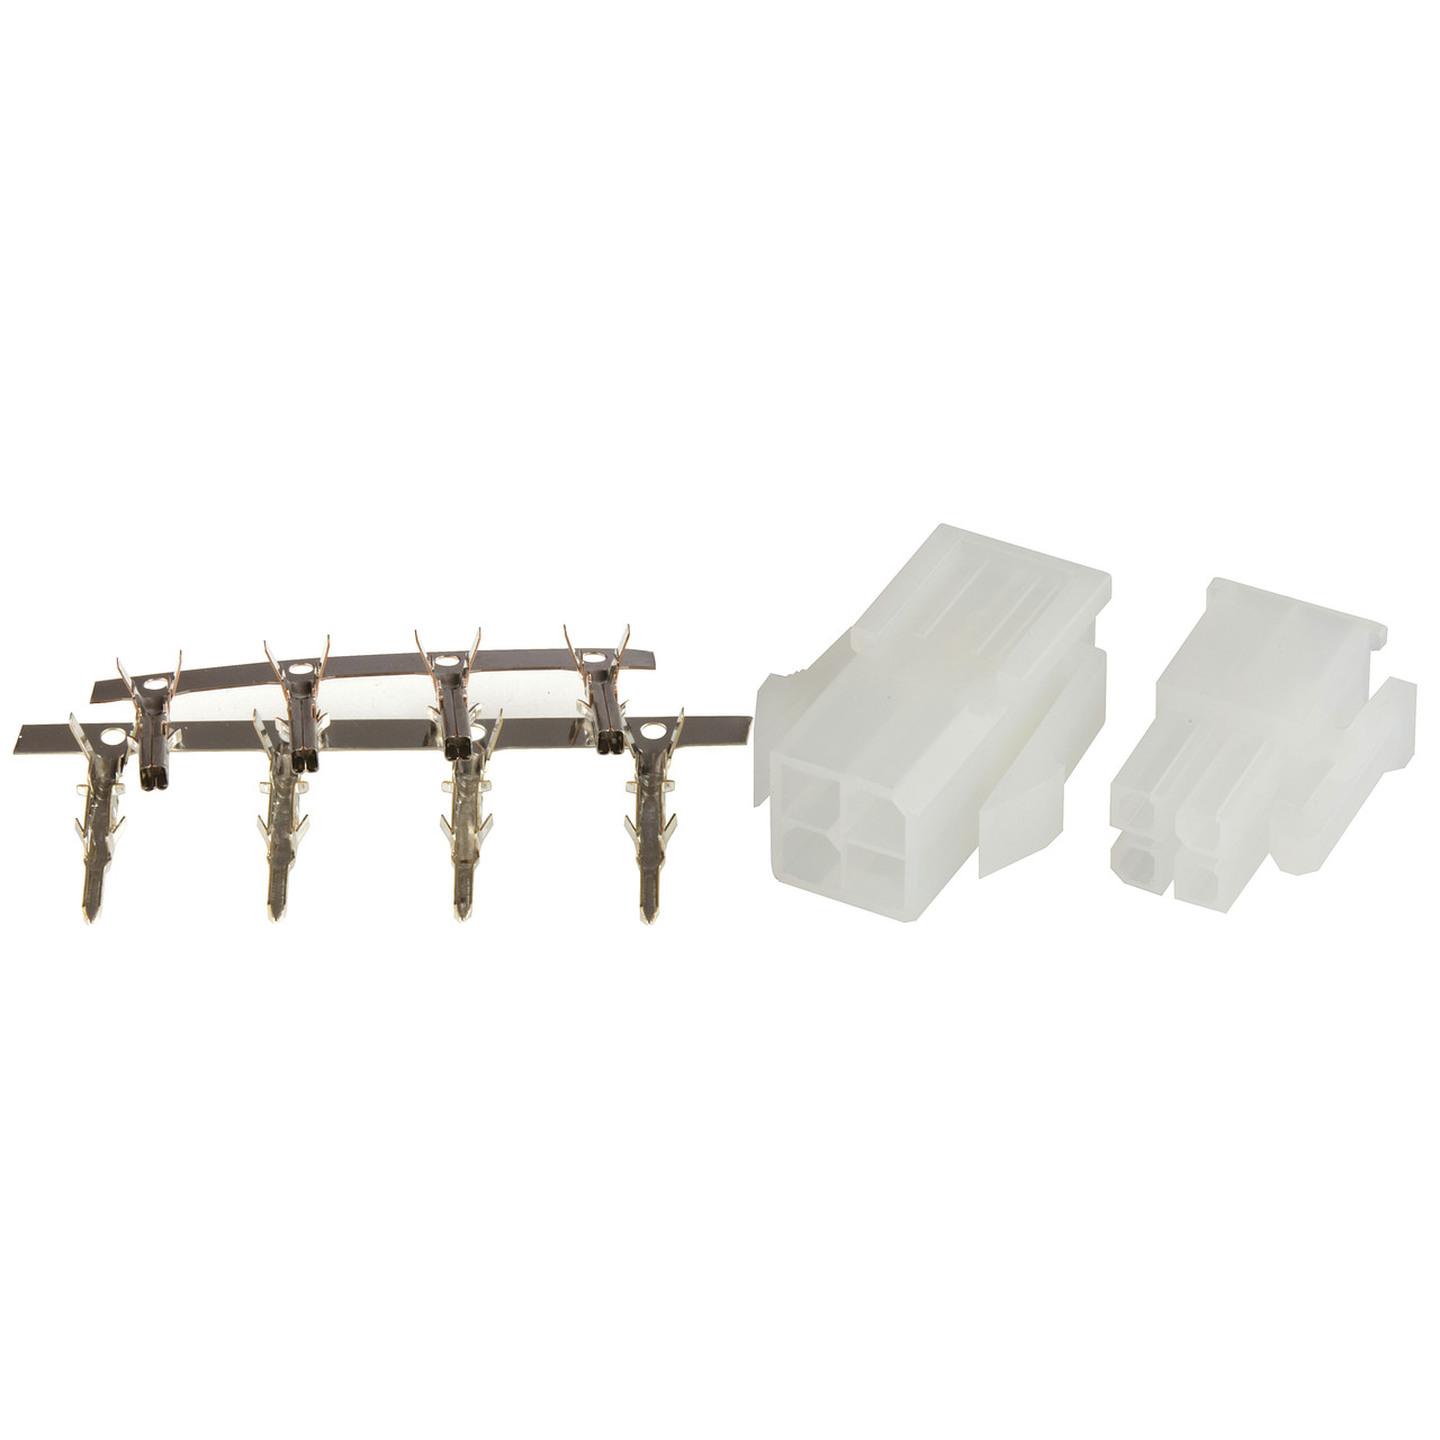 4 Pin Mini Molex Plug/Socket